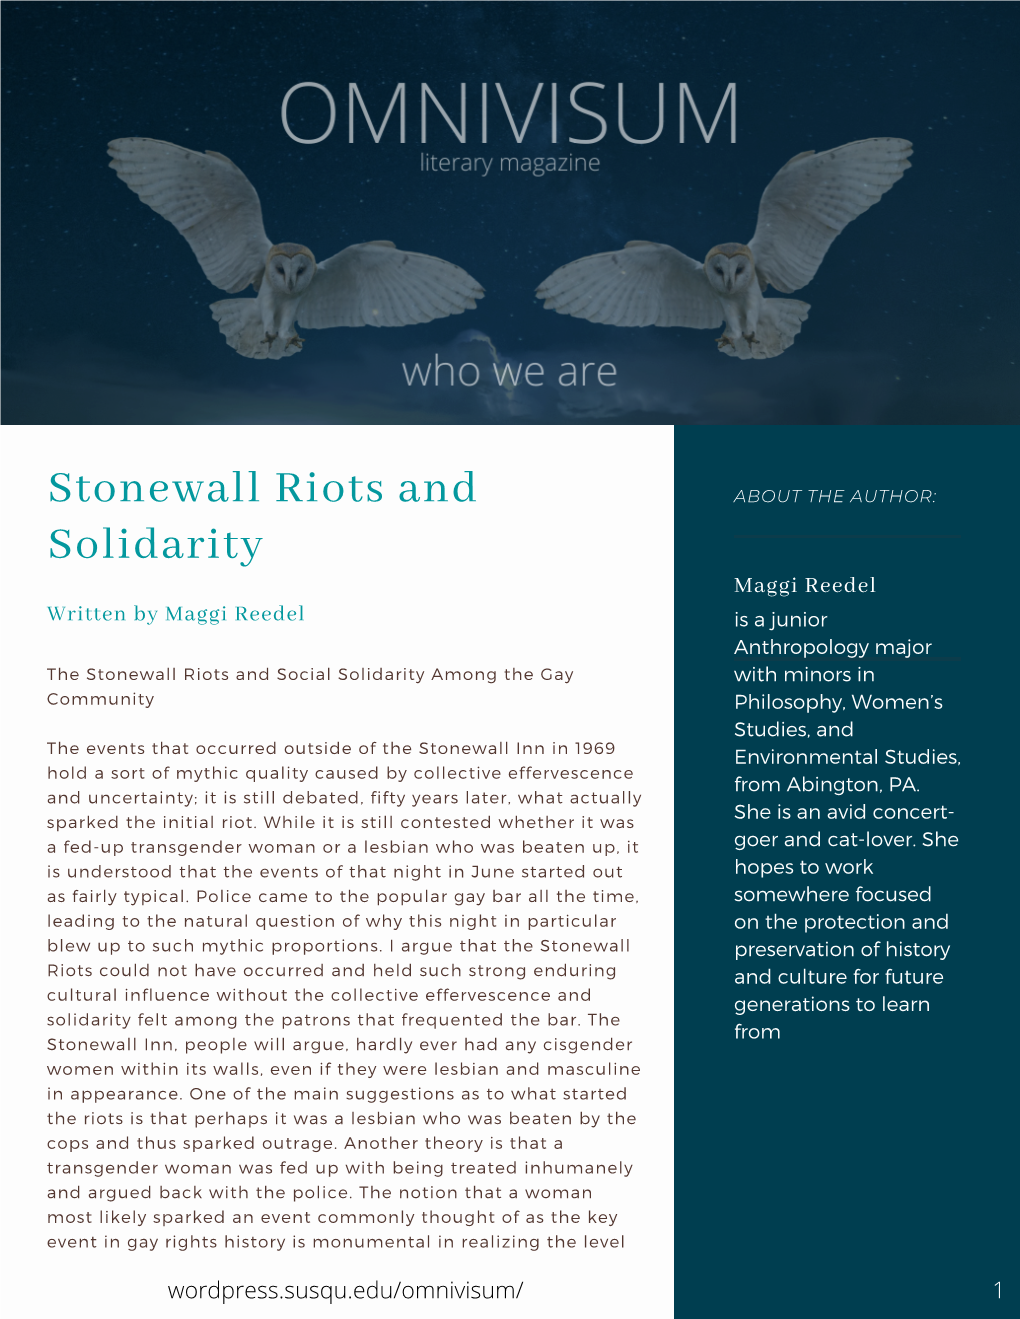 Stonewall Riots and Solidarity